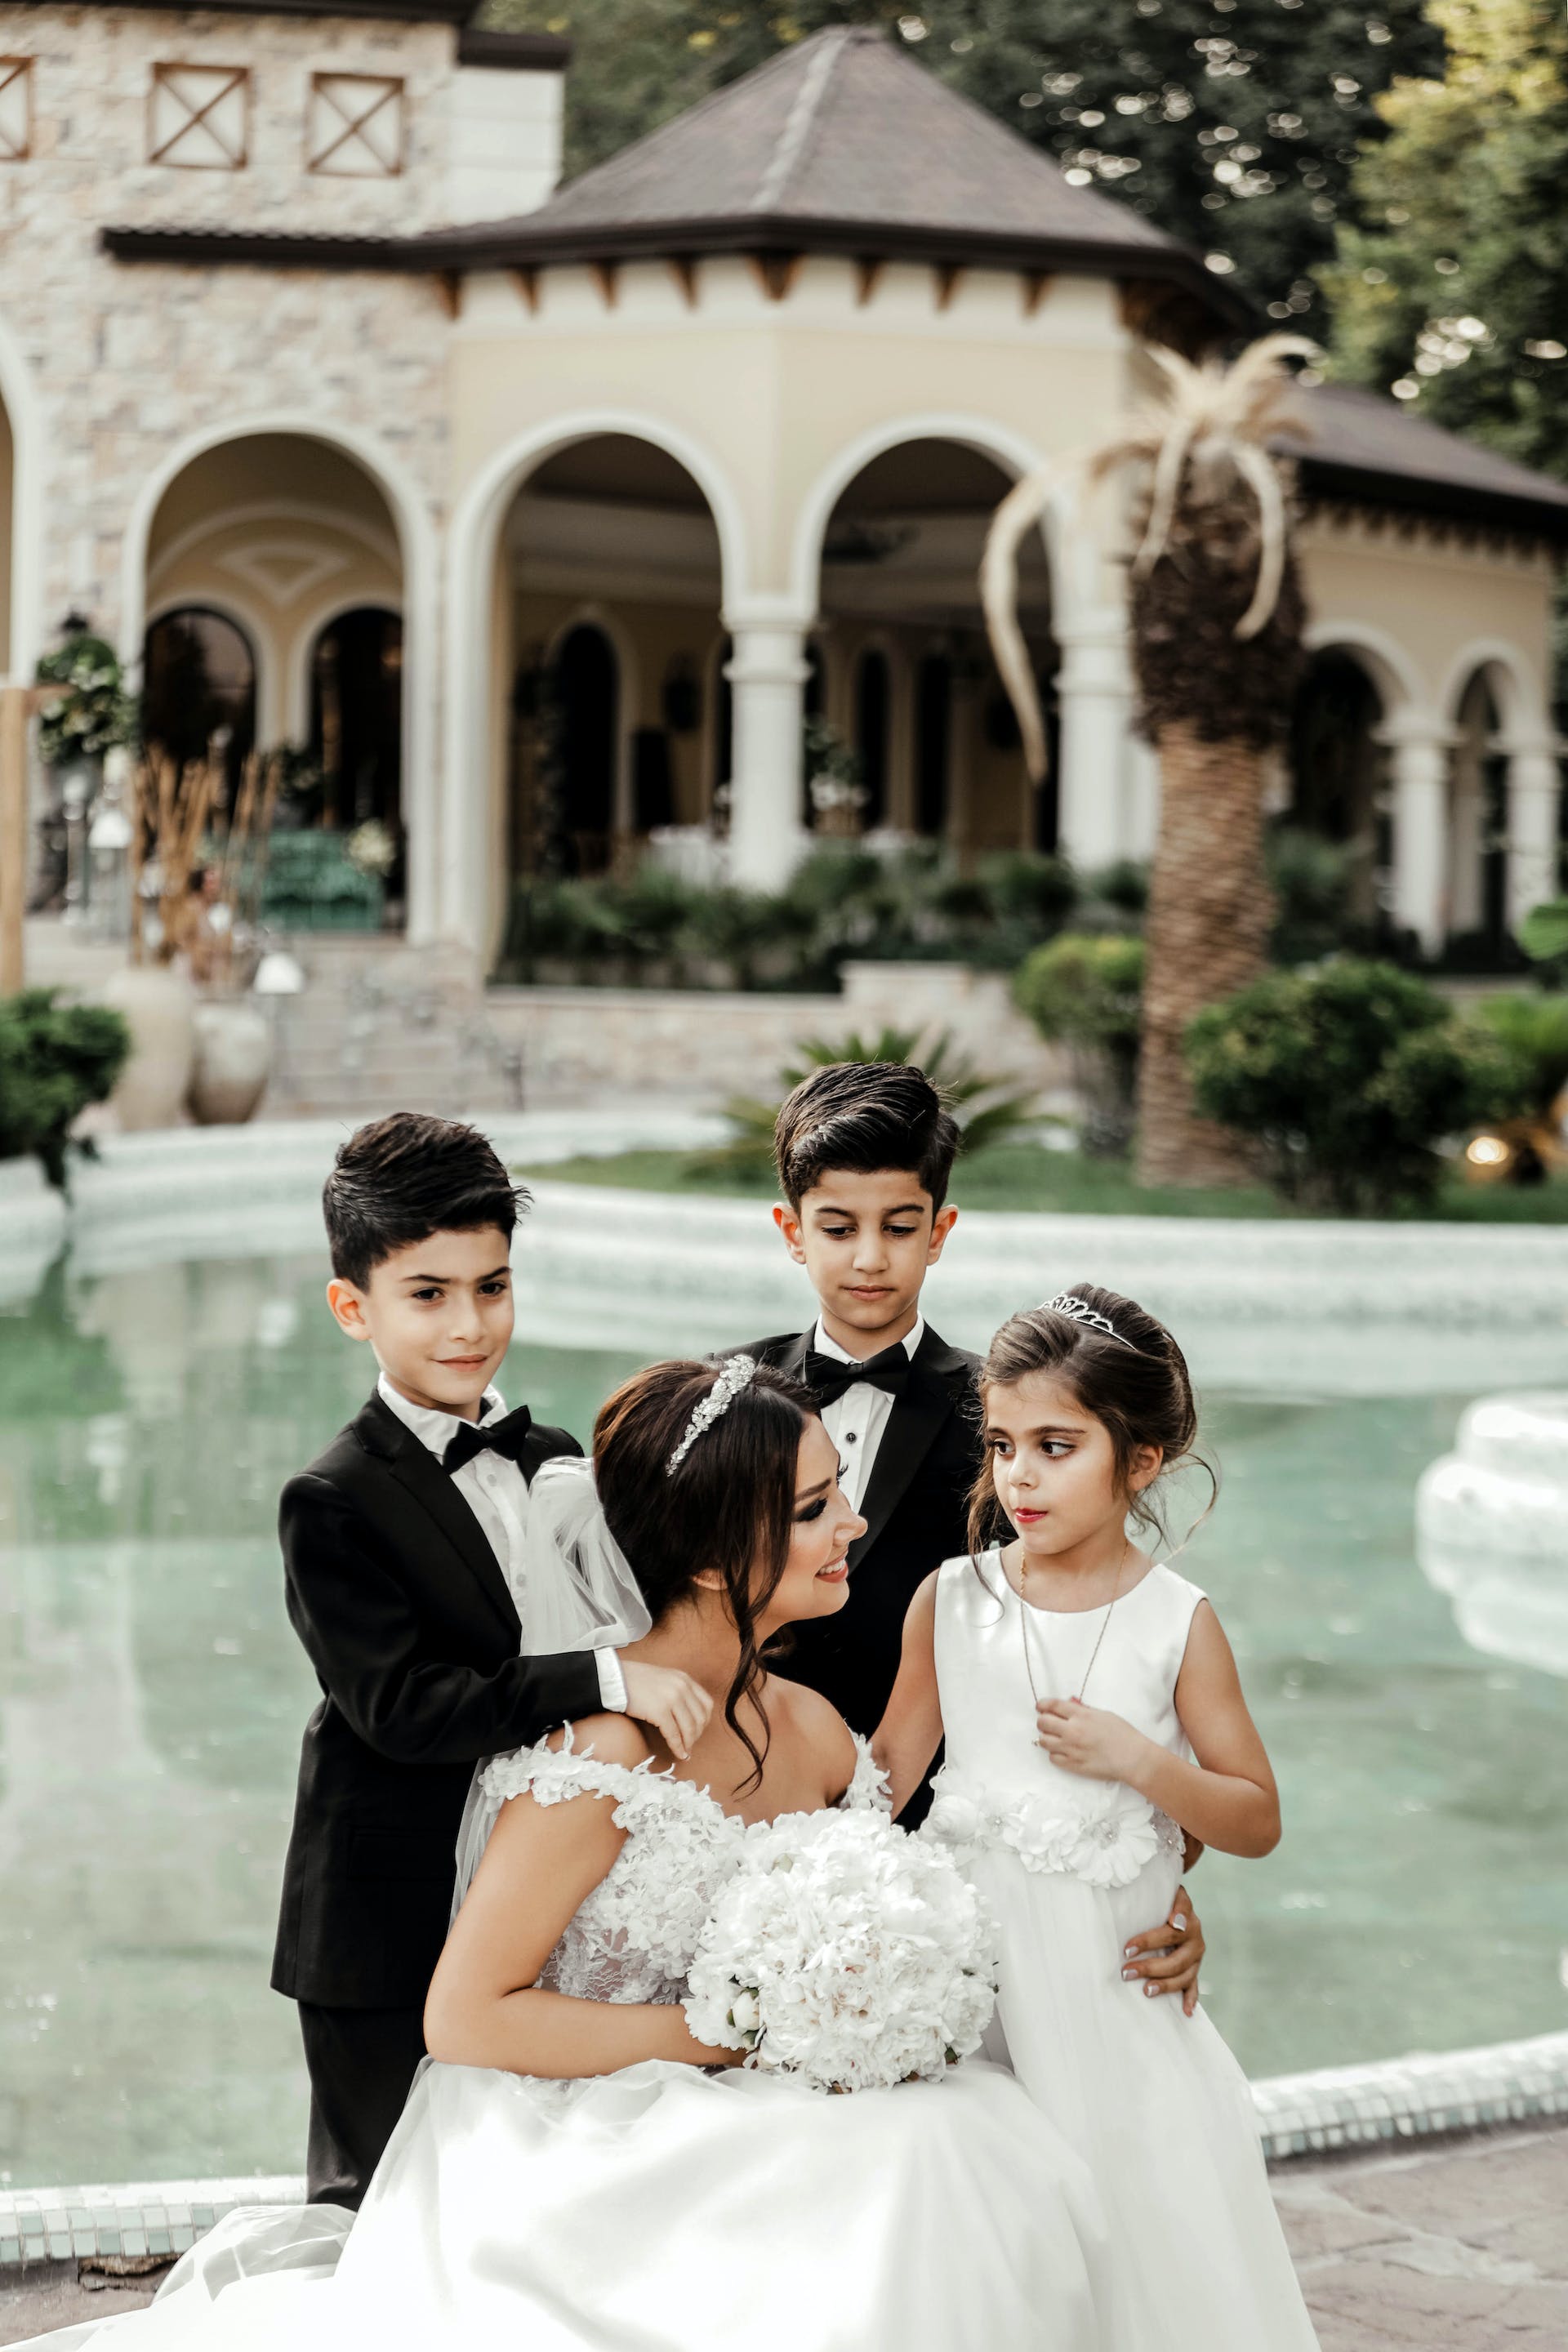 Three children standing around  a bride | Source: Pexels